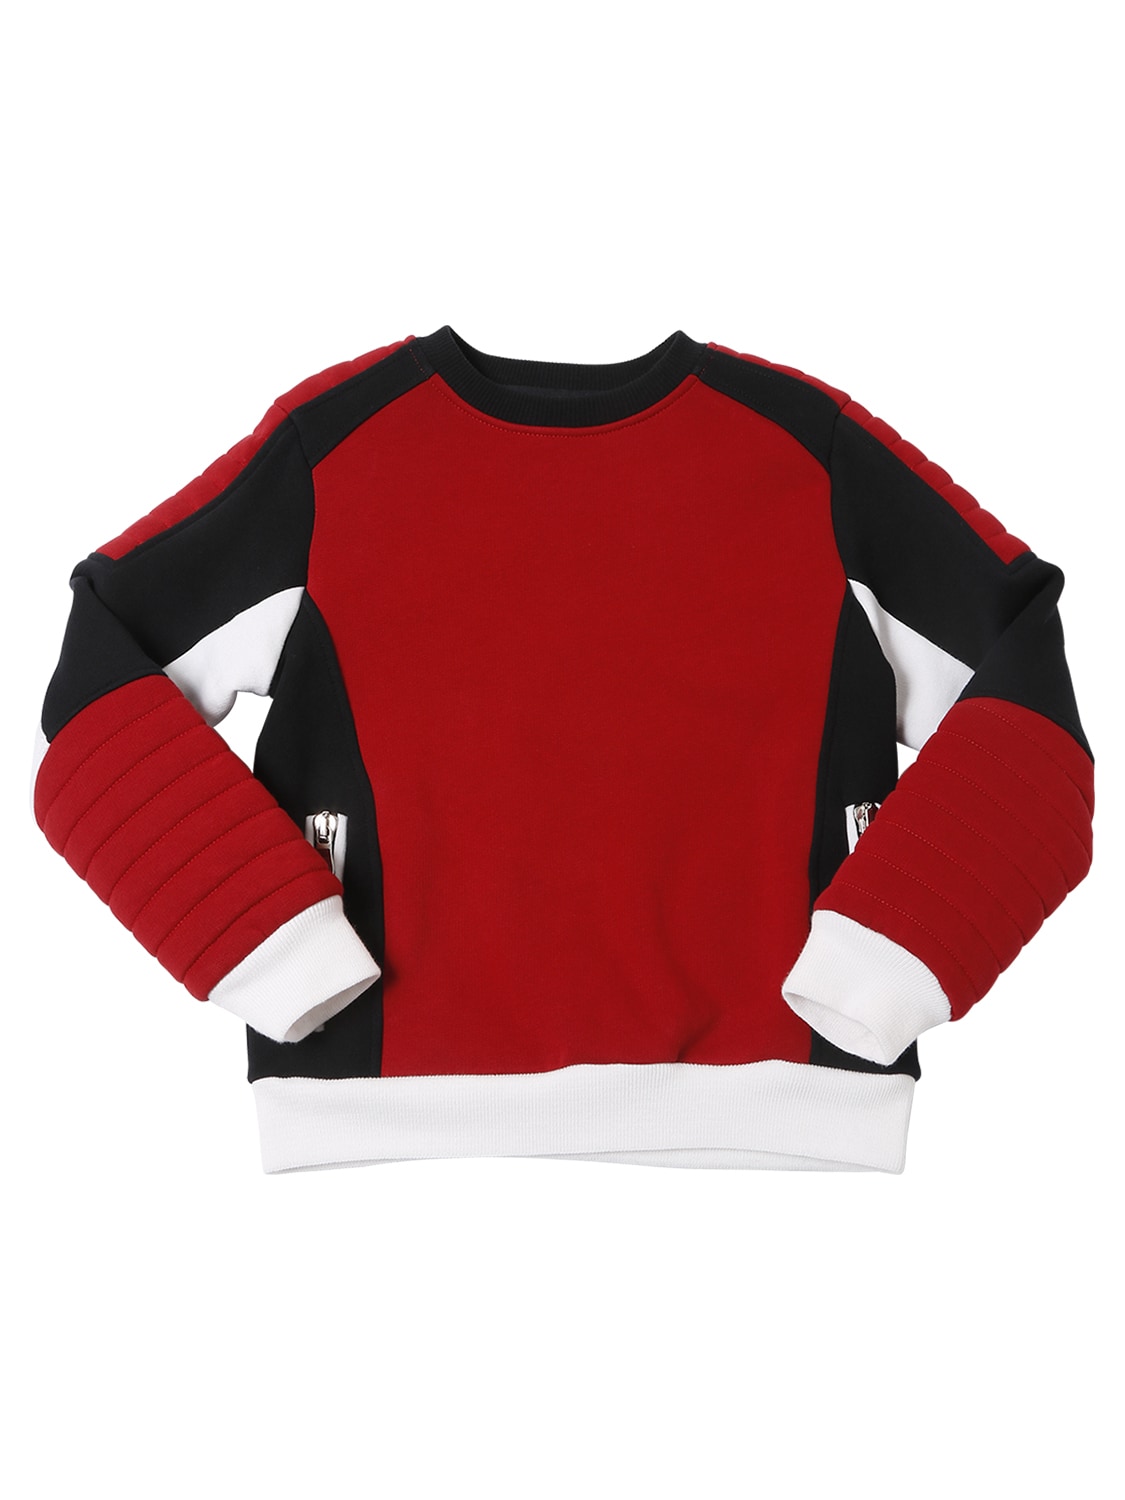 Balmain Kids' Color Block Biker Cotton Sweatshirt In Red,black